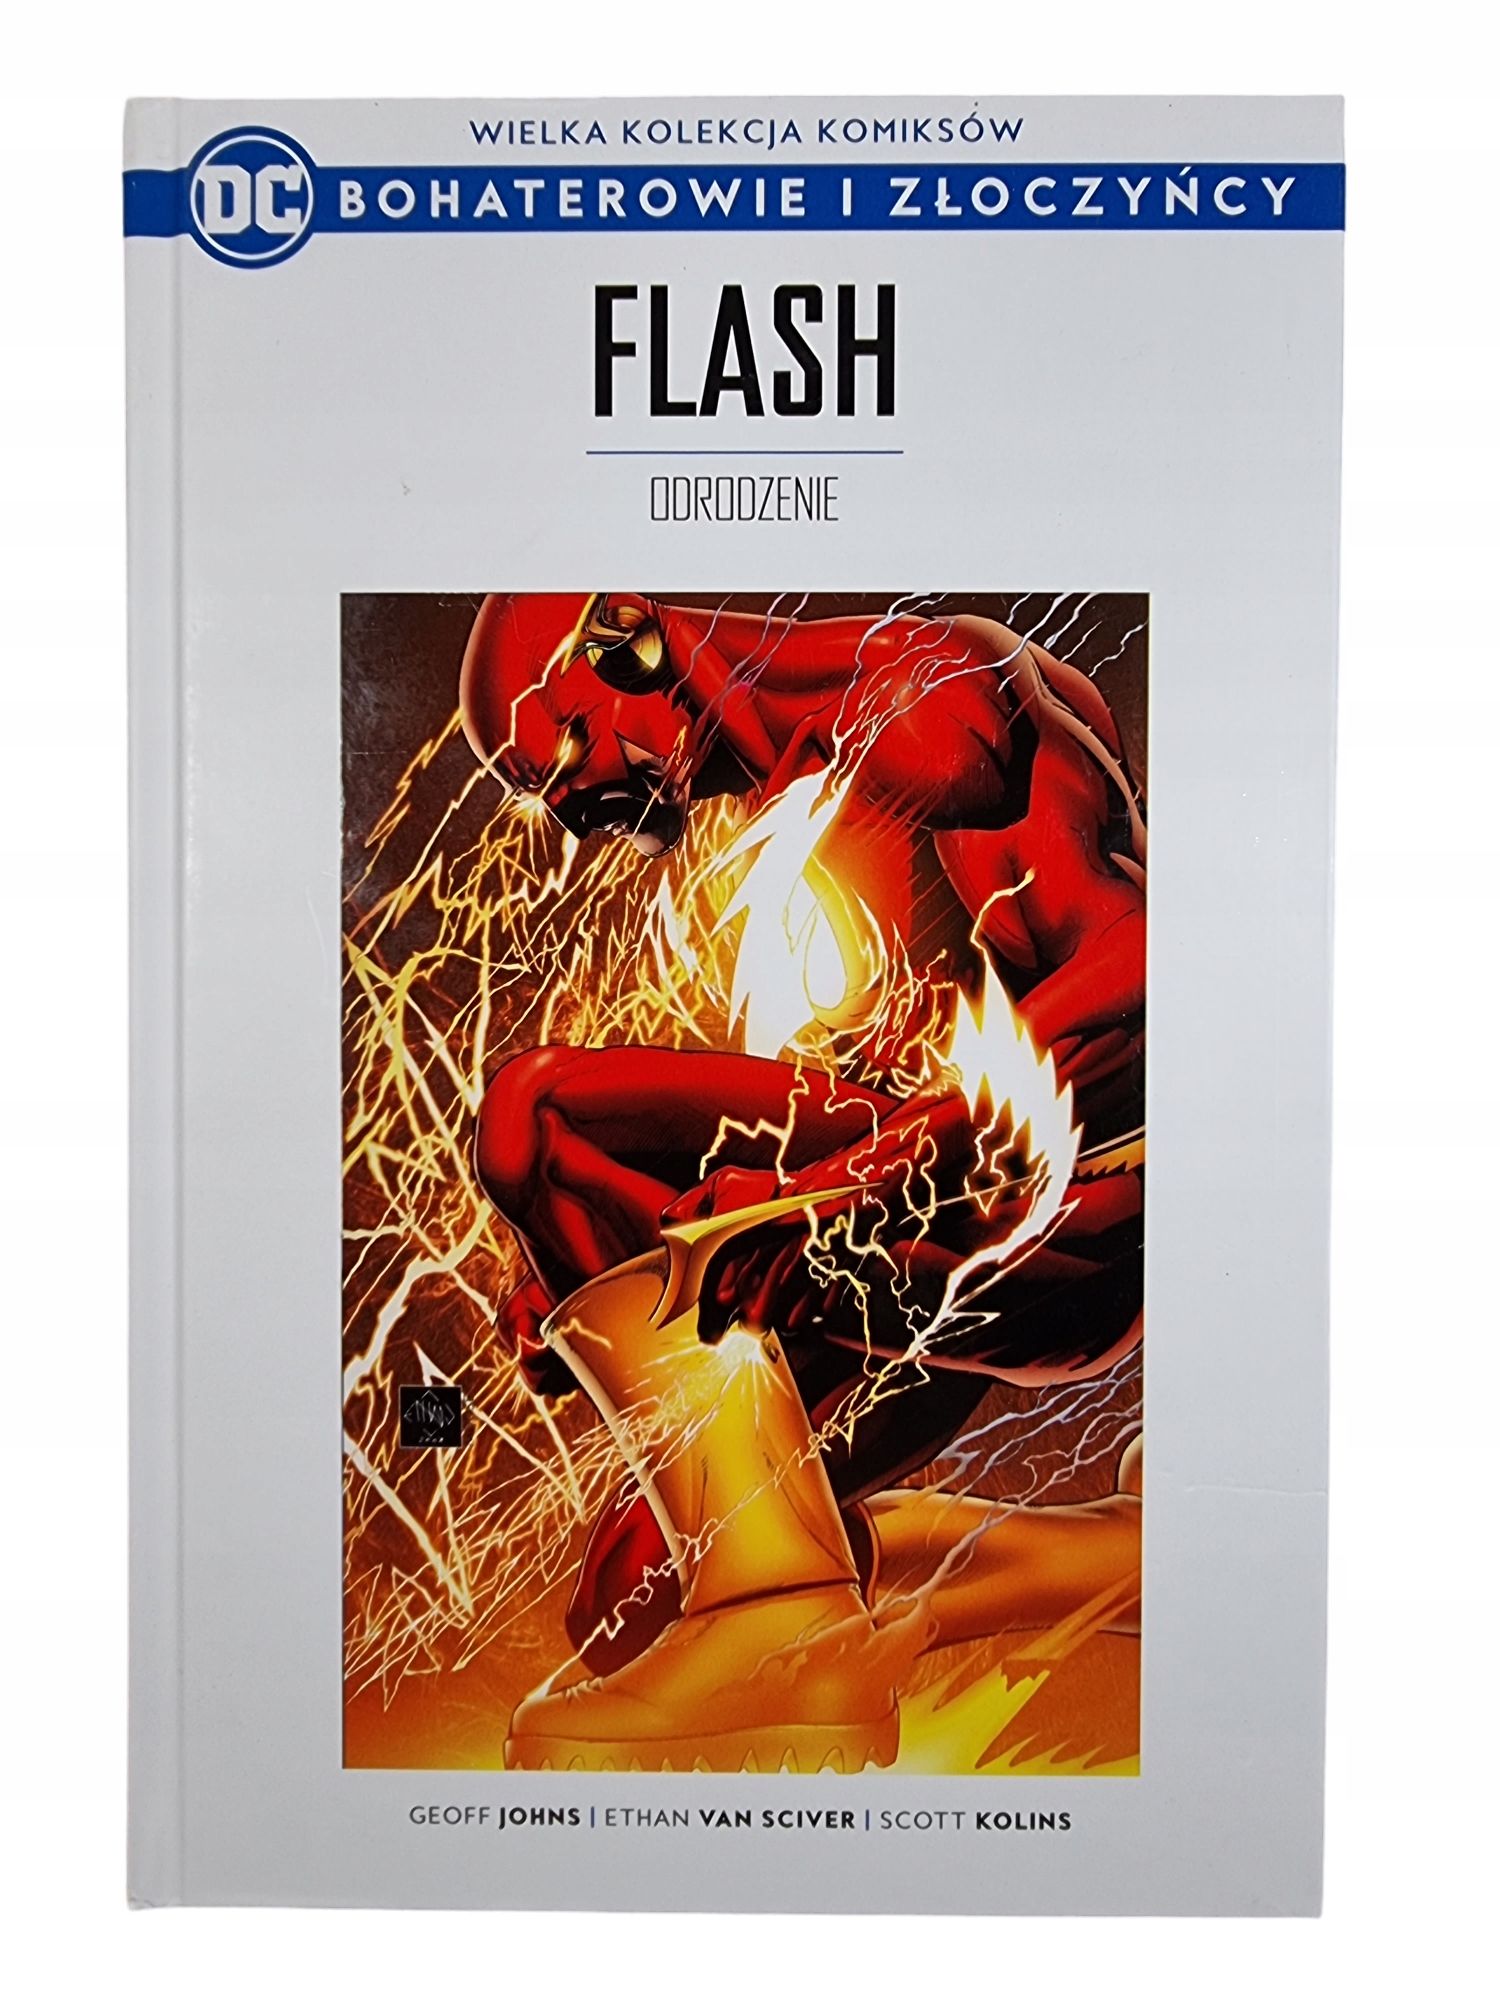 Flash / DC Bohaterowie i Złoczyńcy Tom 6 / komiks